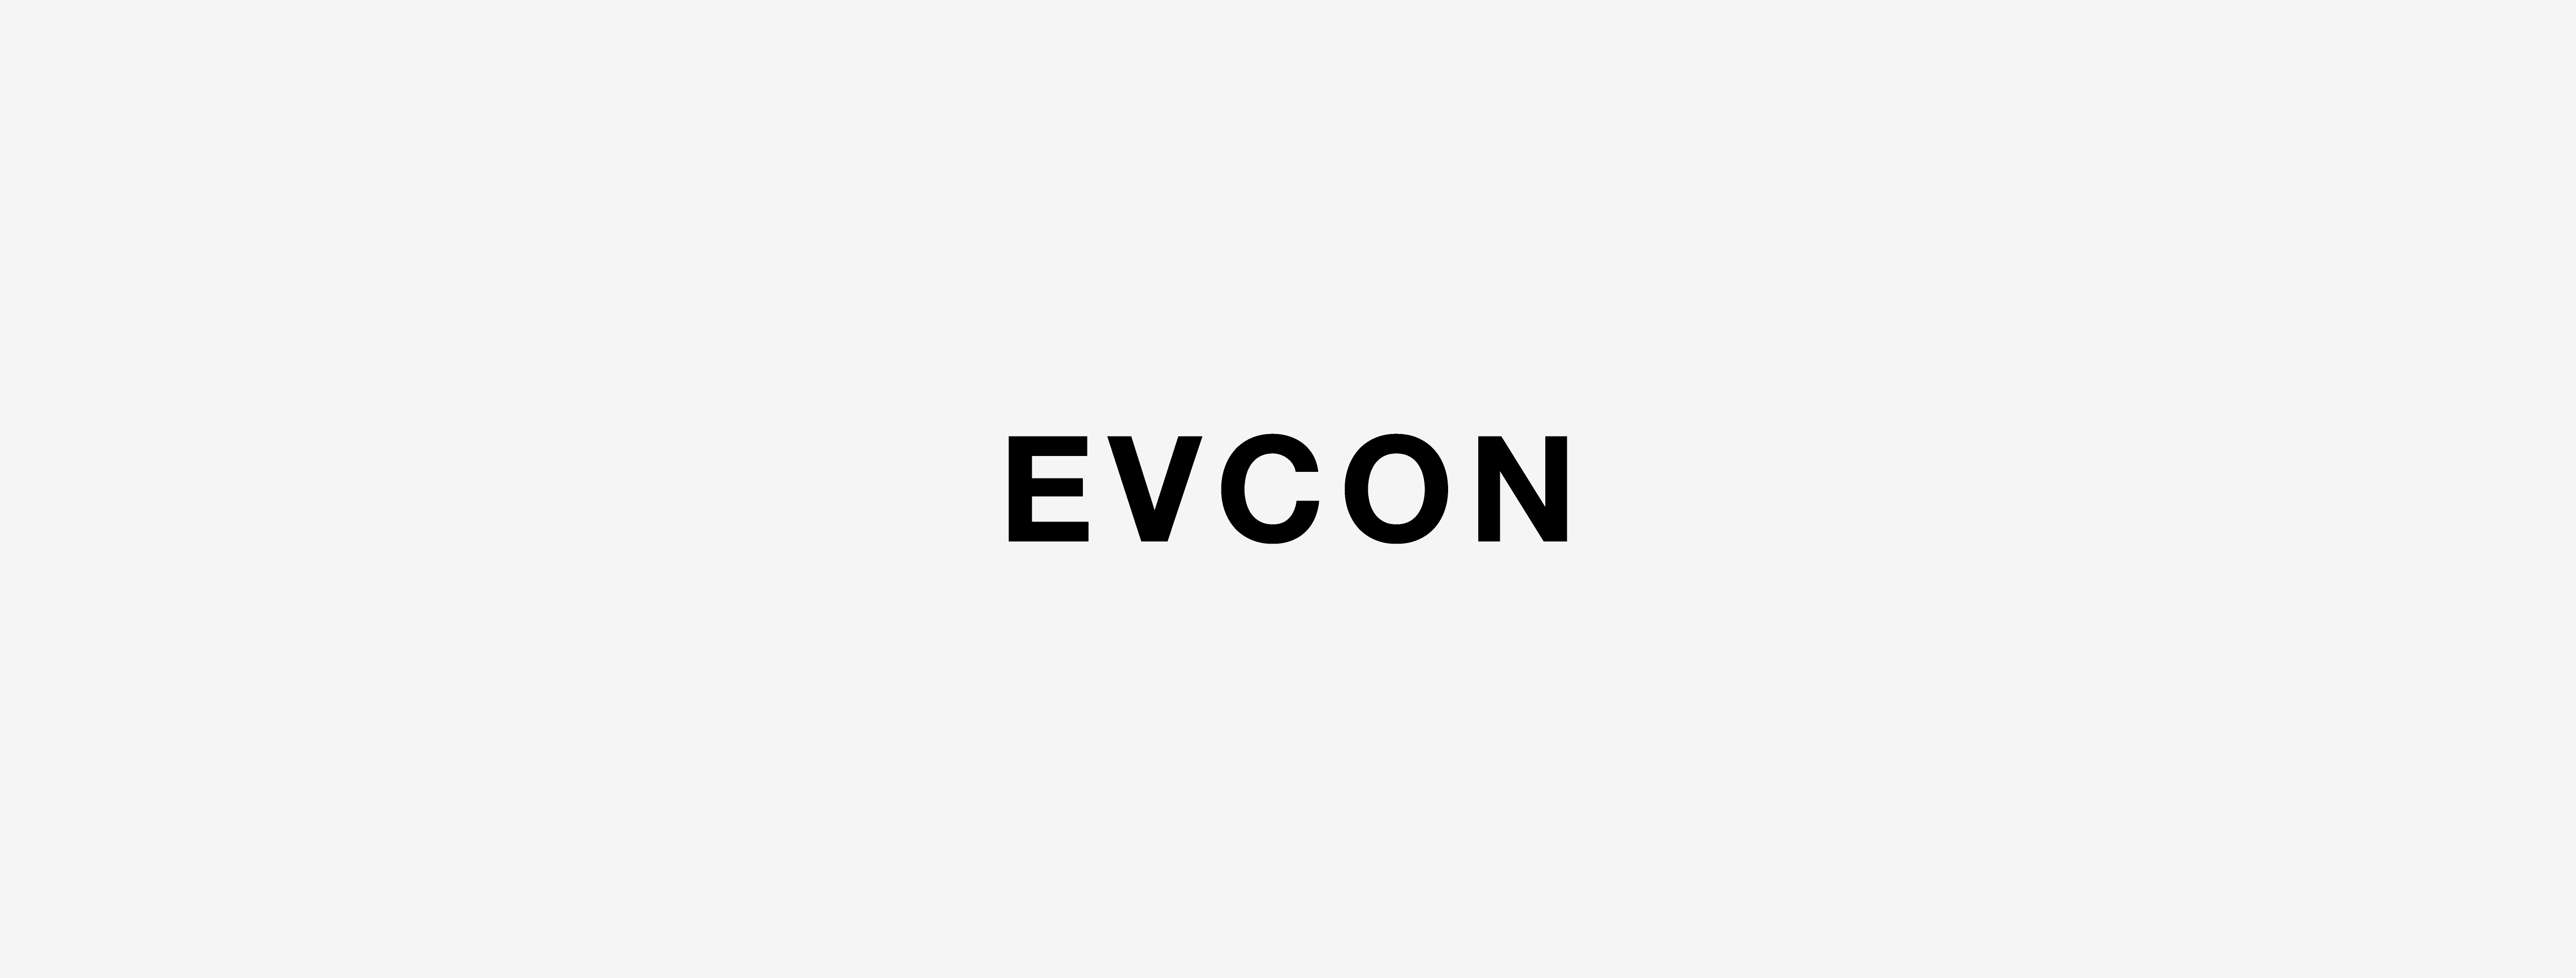 EVCON エビコン